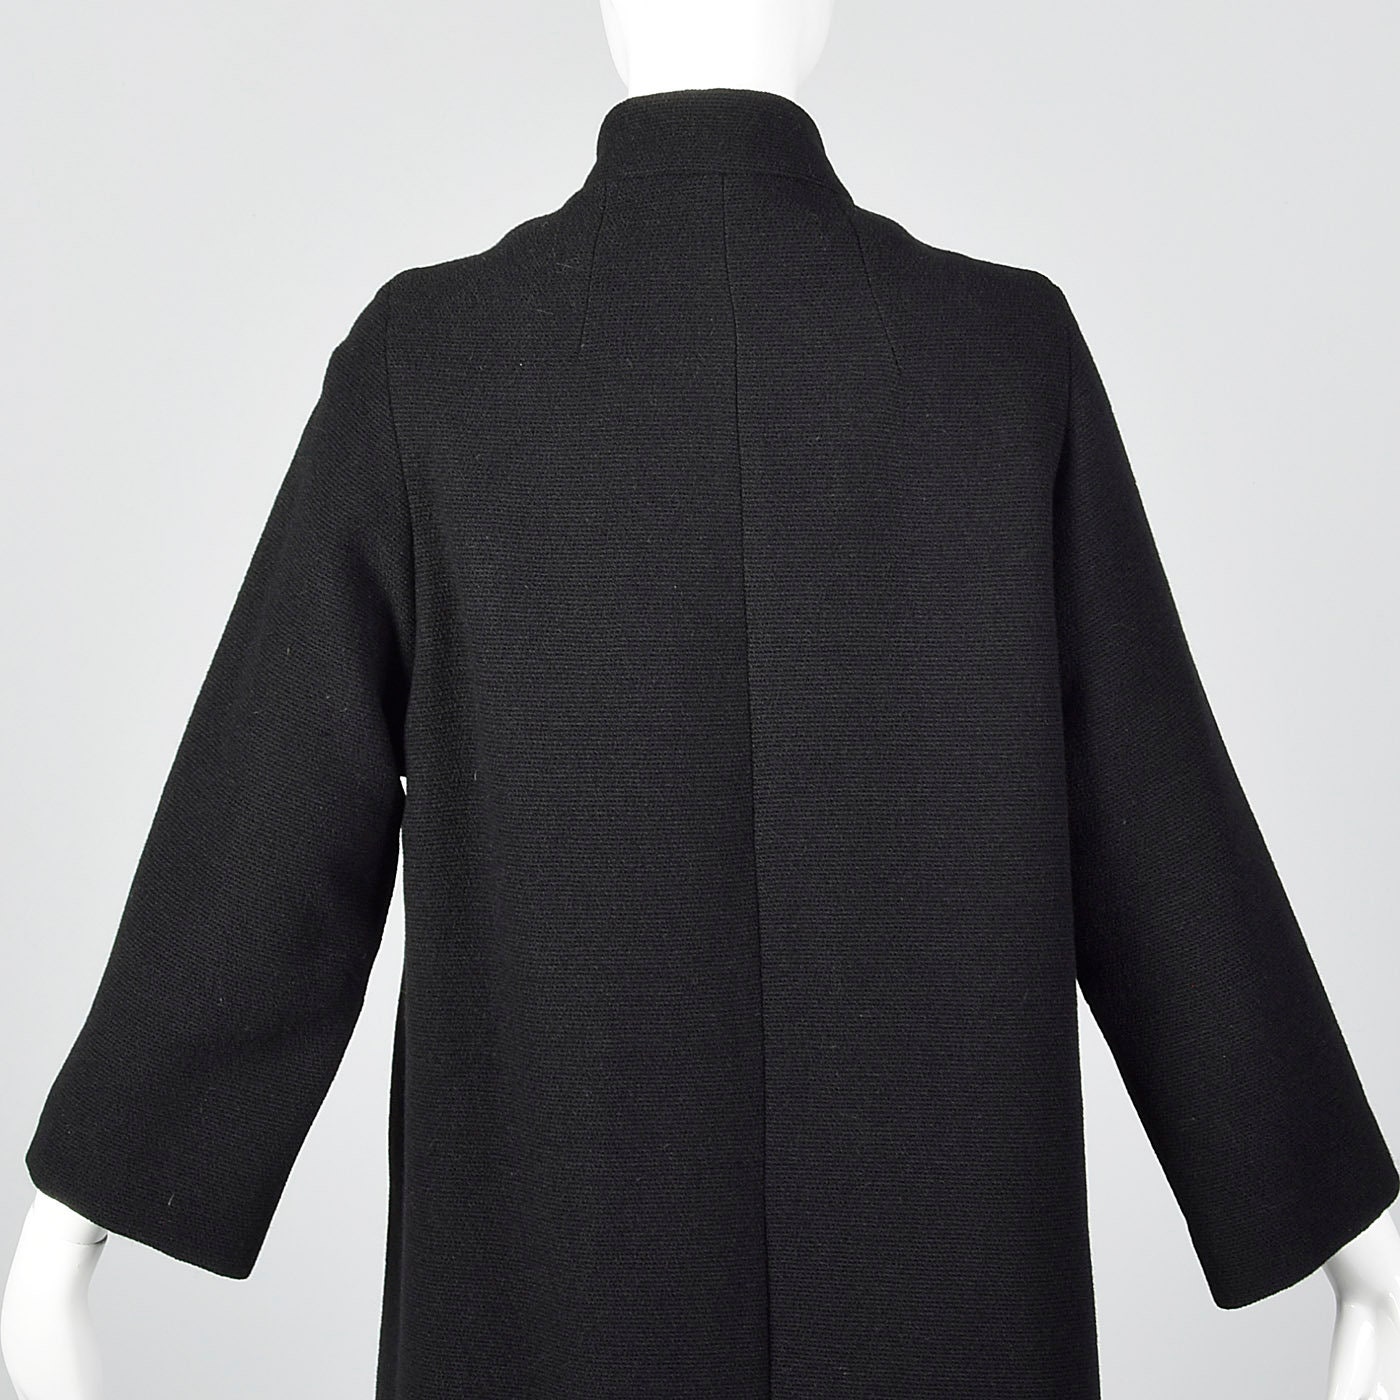 Medium Heavy Winter Coat Pockets Black Buttons Lined Standing - Etsy